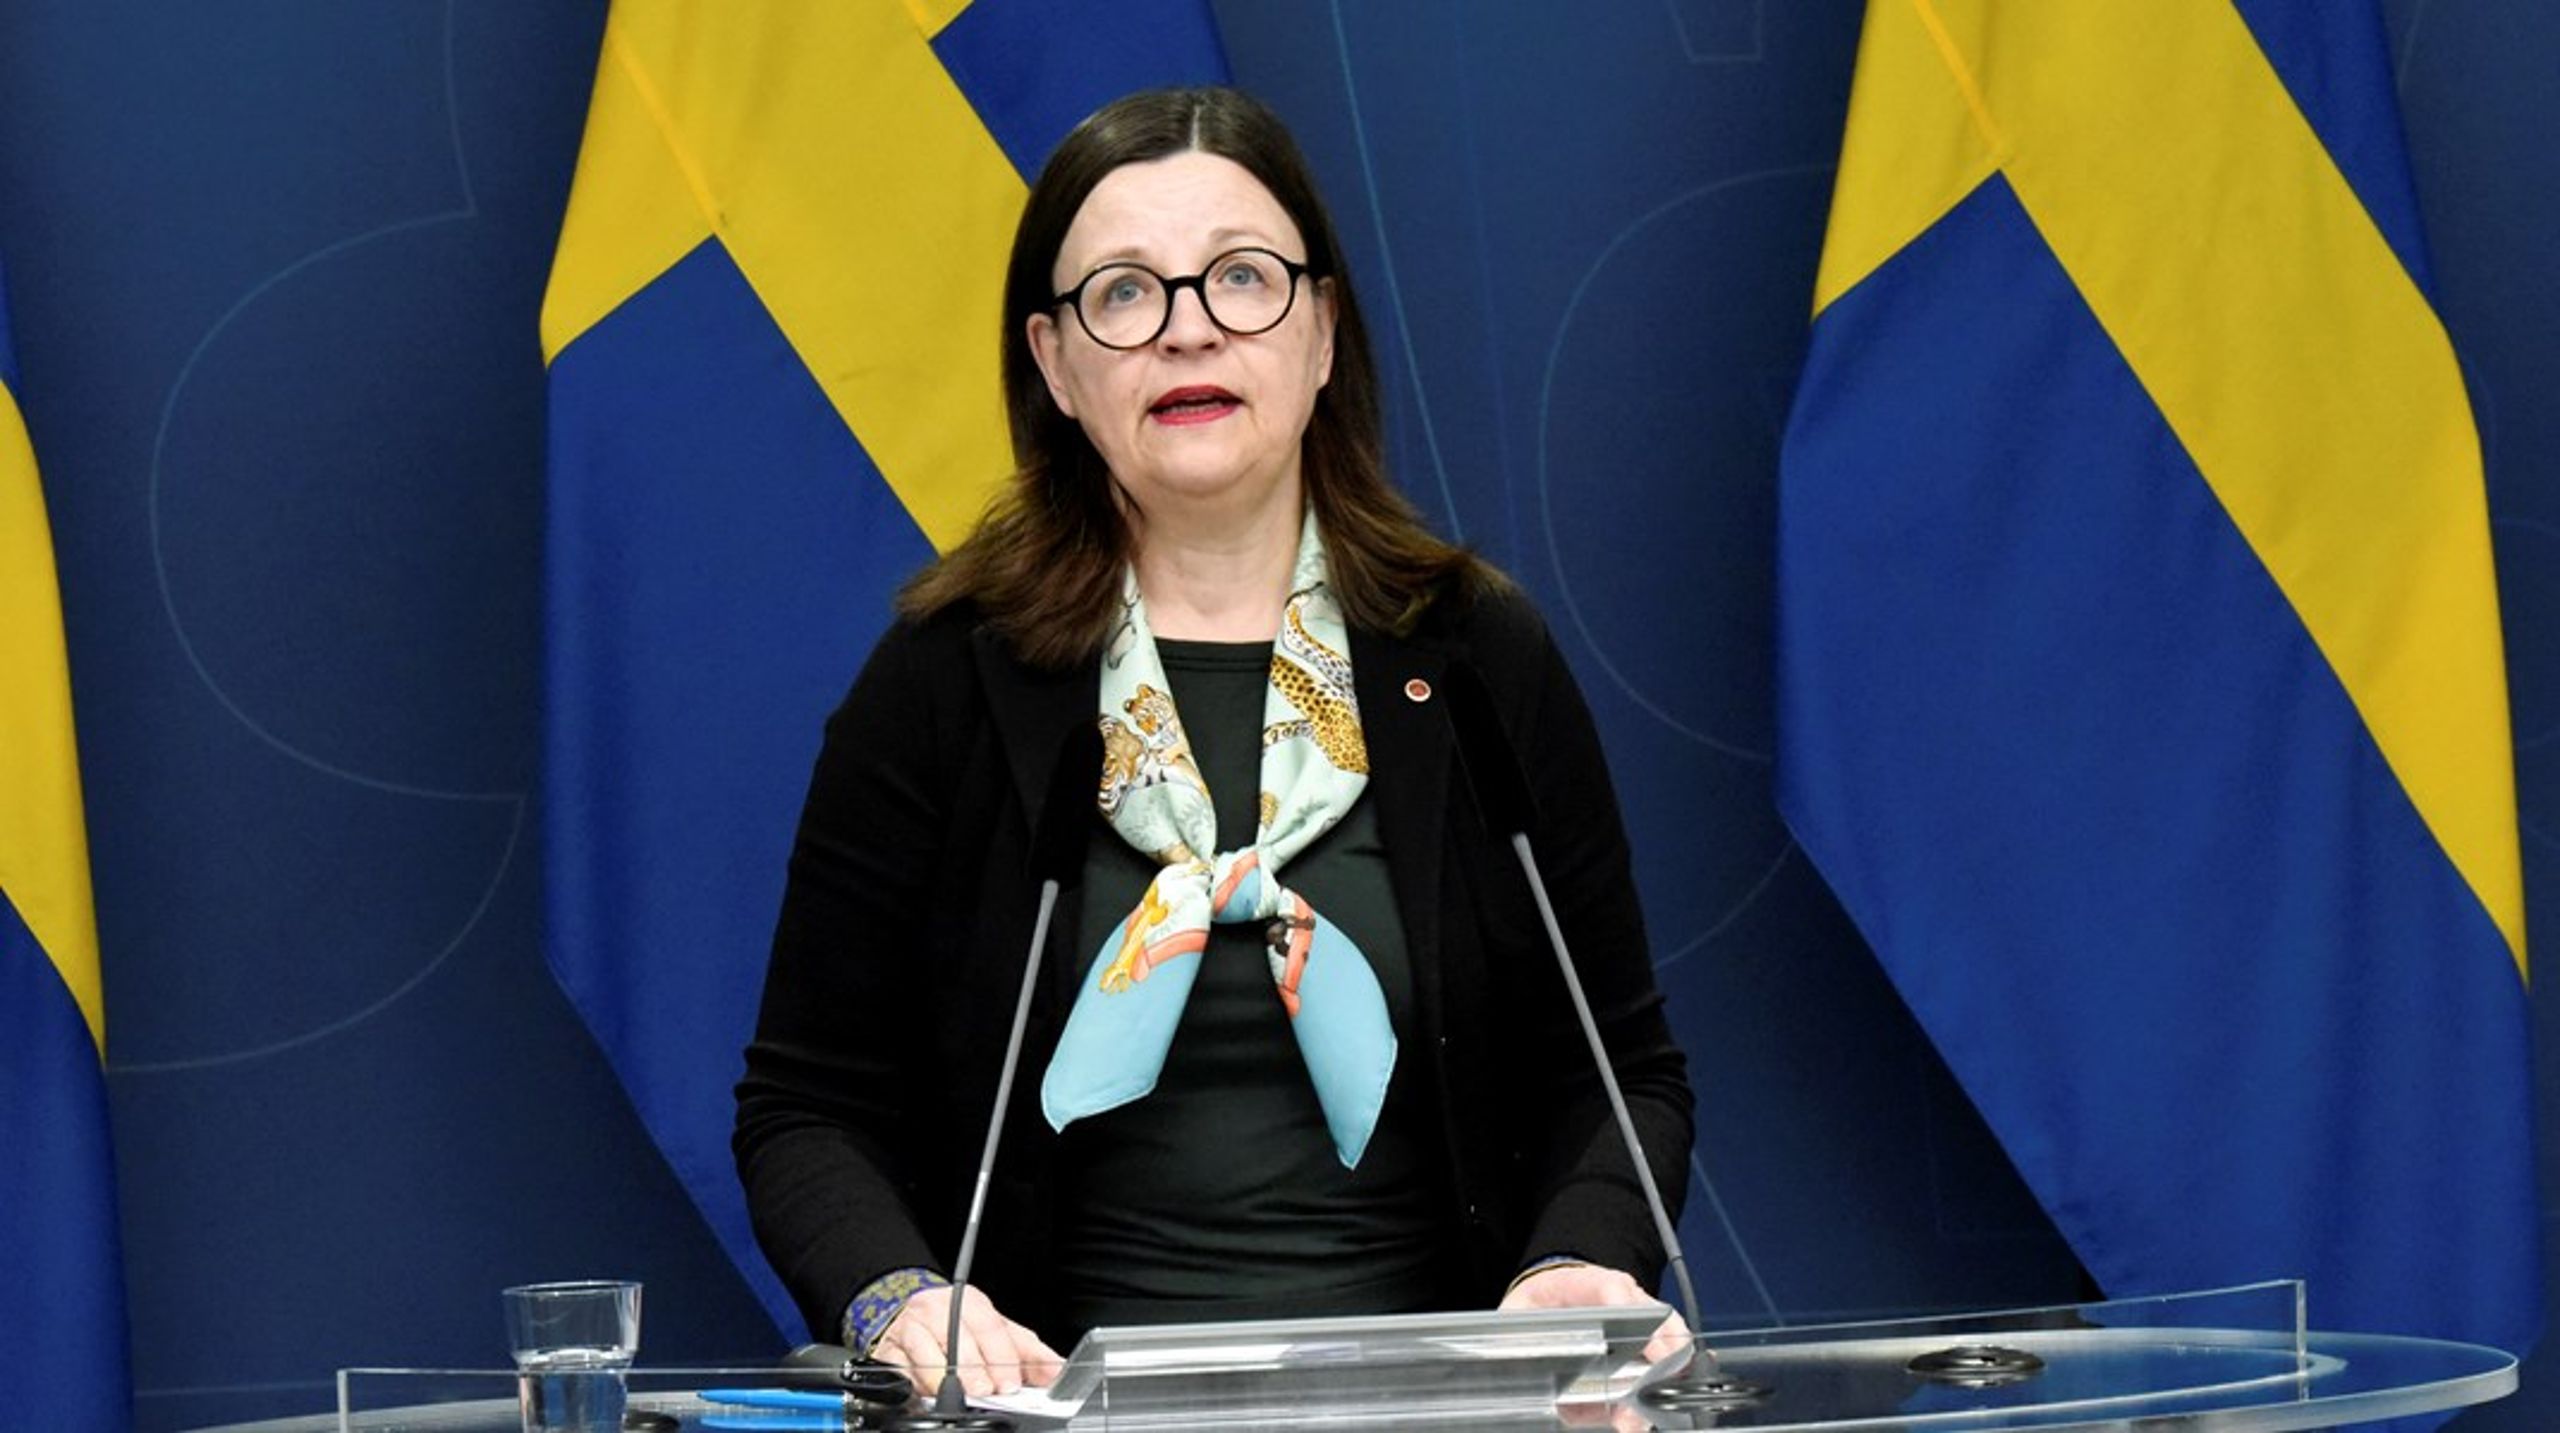 Utbildningsminister Anna Ekström (S) håller en pressträff om regeringens lagförslag om planering och dimensionering av gymnasial utbildning.